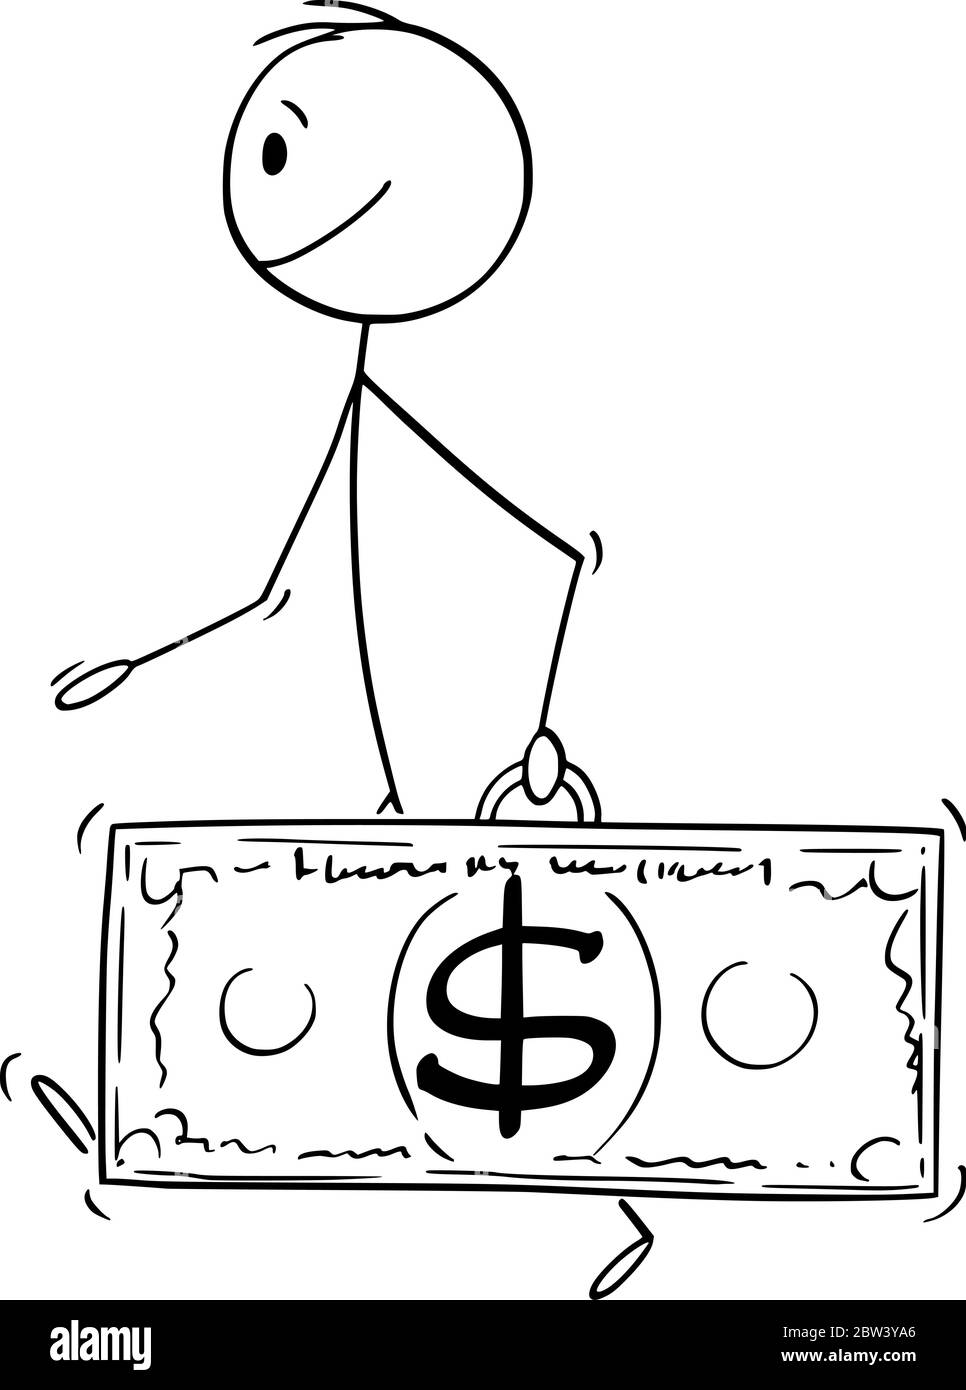 Vektor Cartoon Stick Figur Zeichnung konzeptionelle Illustration von Walking Mann oder Geschäftsmann trägt Dollar-Währungsrechnung oder Banknotenkoffer. Stock Vektor